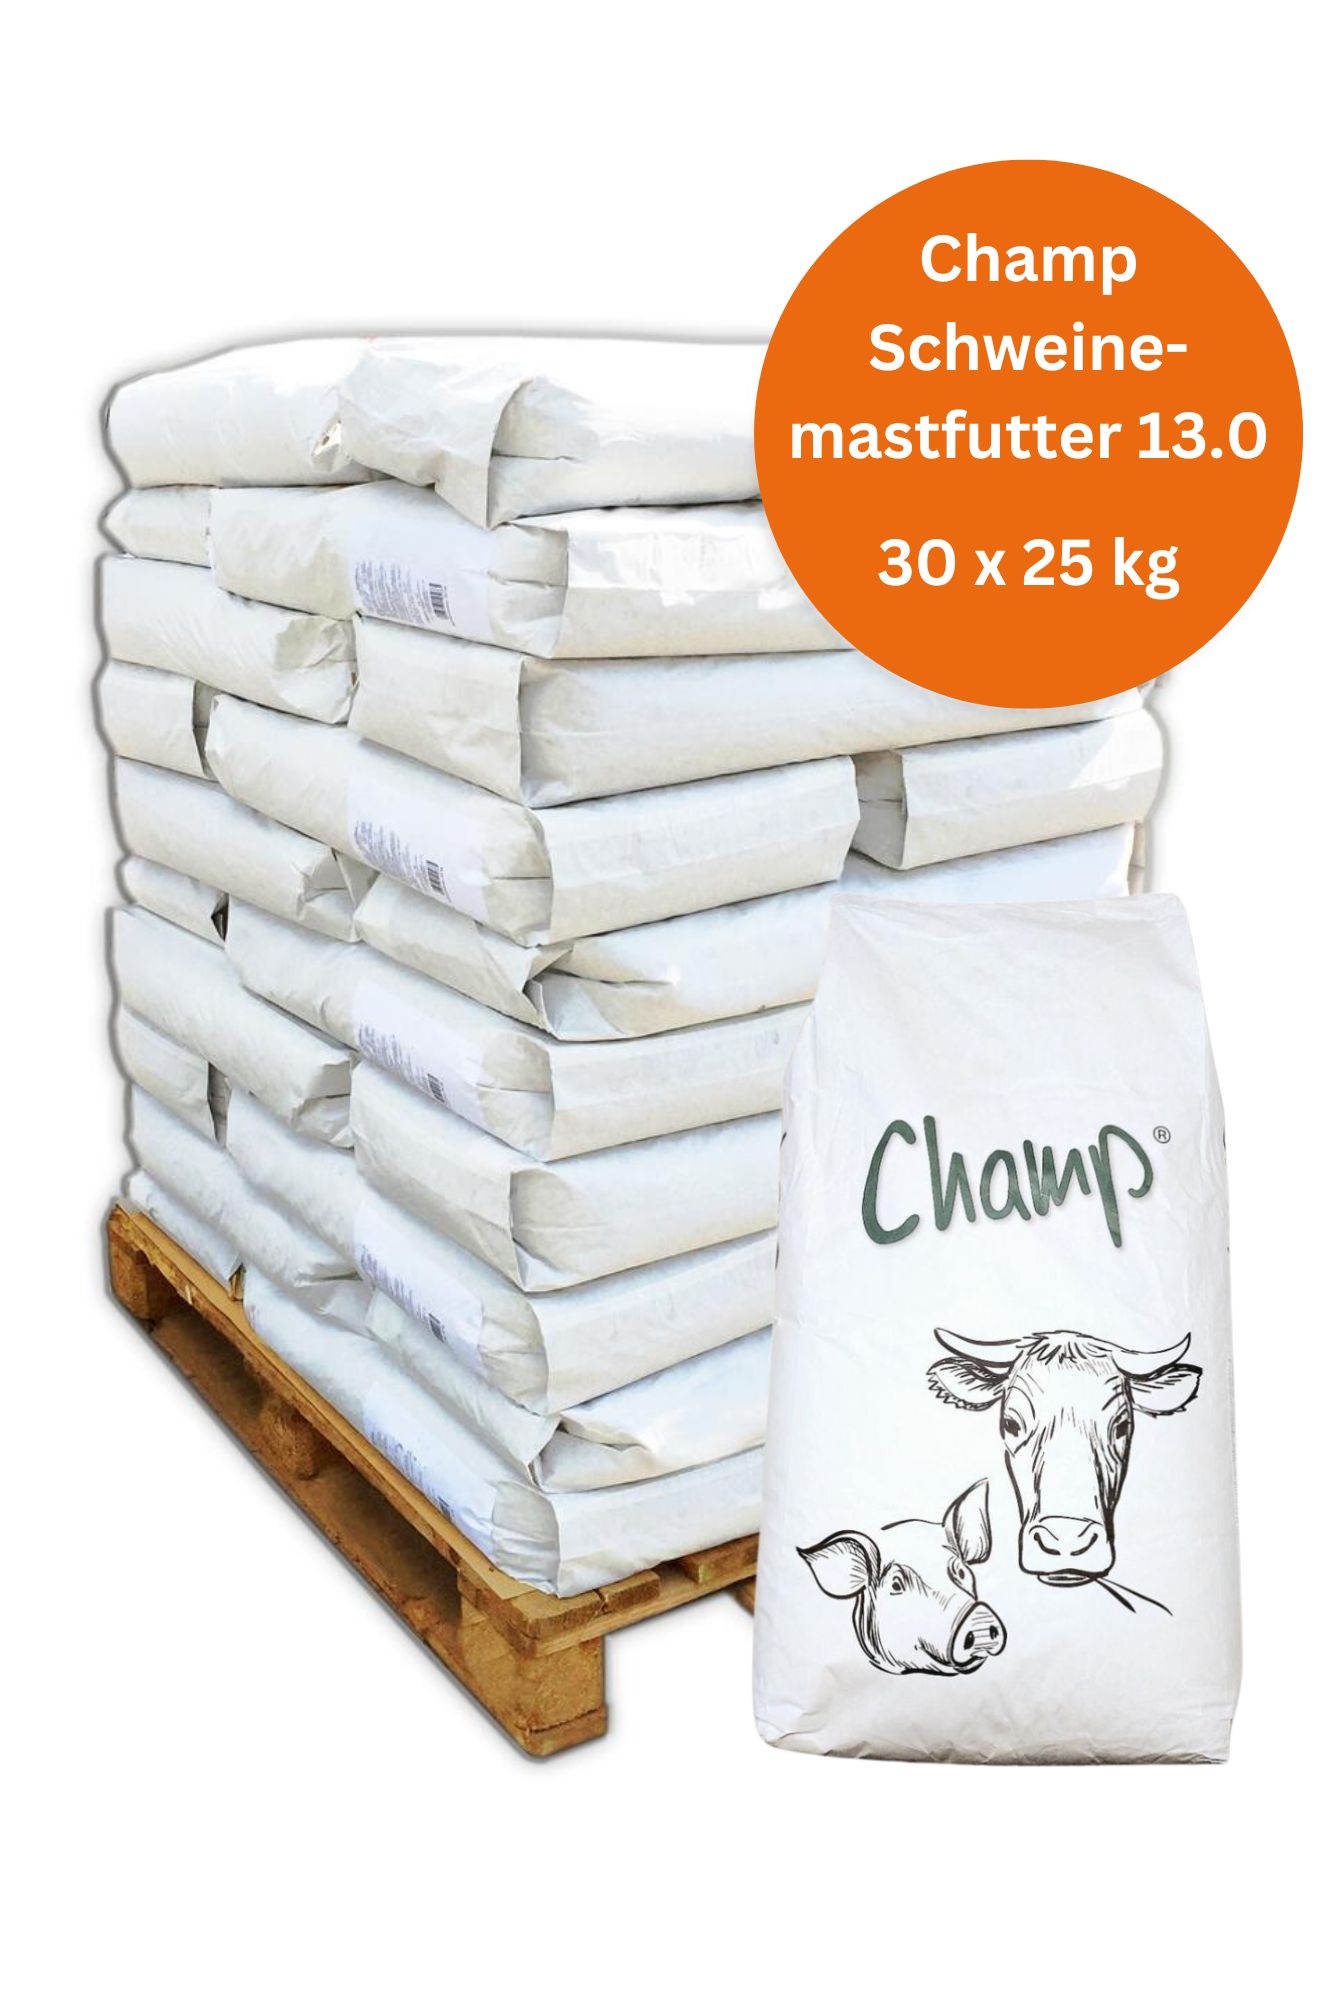 Palette Champ Schweinemastfutter 13,0 gesackt 750 kg, 30x 25 kg